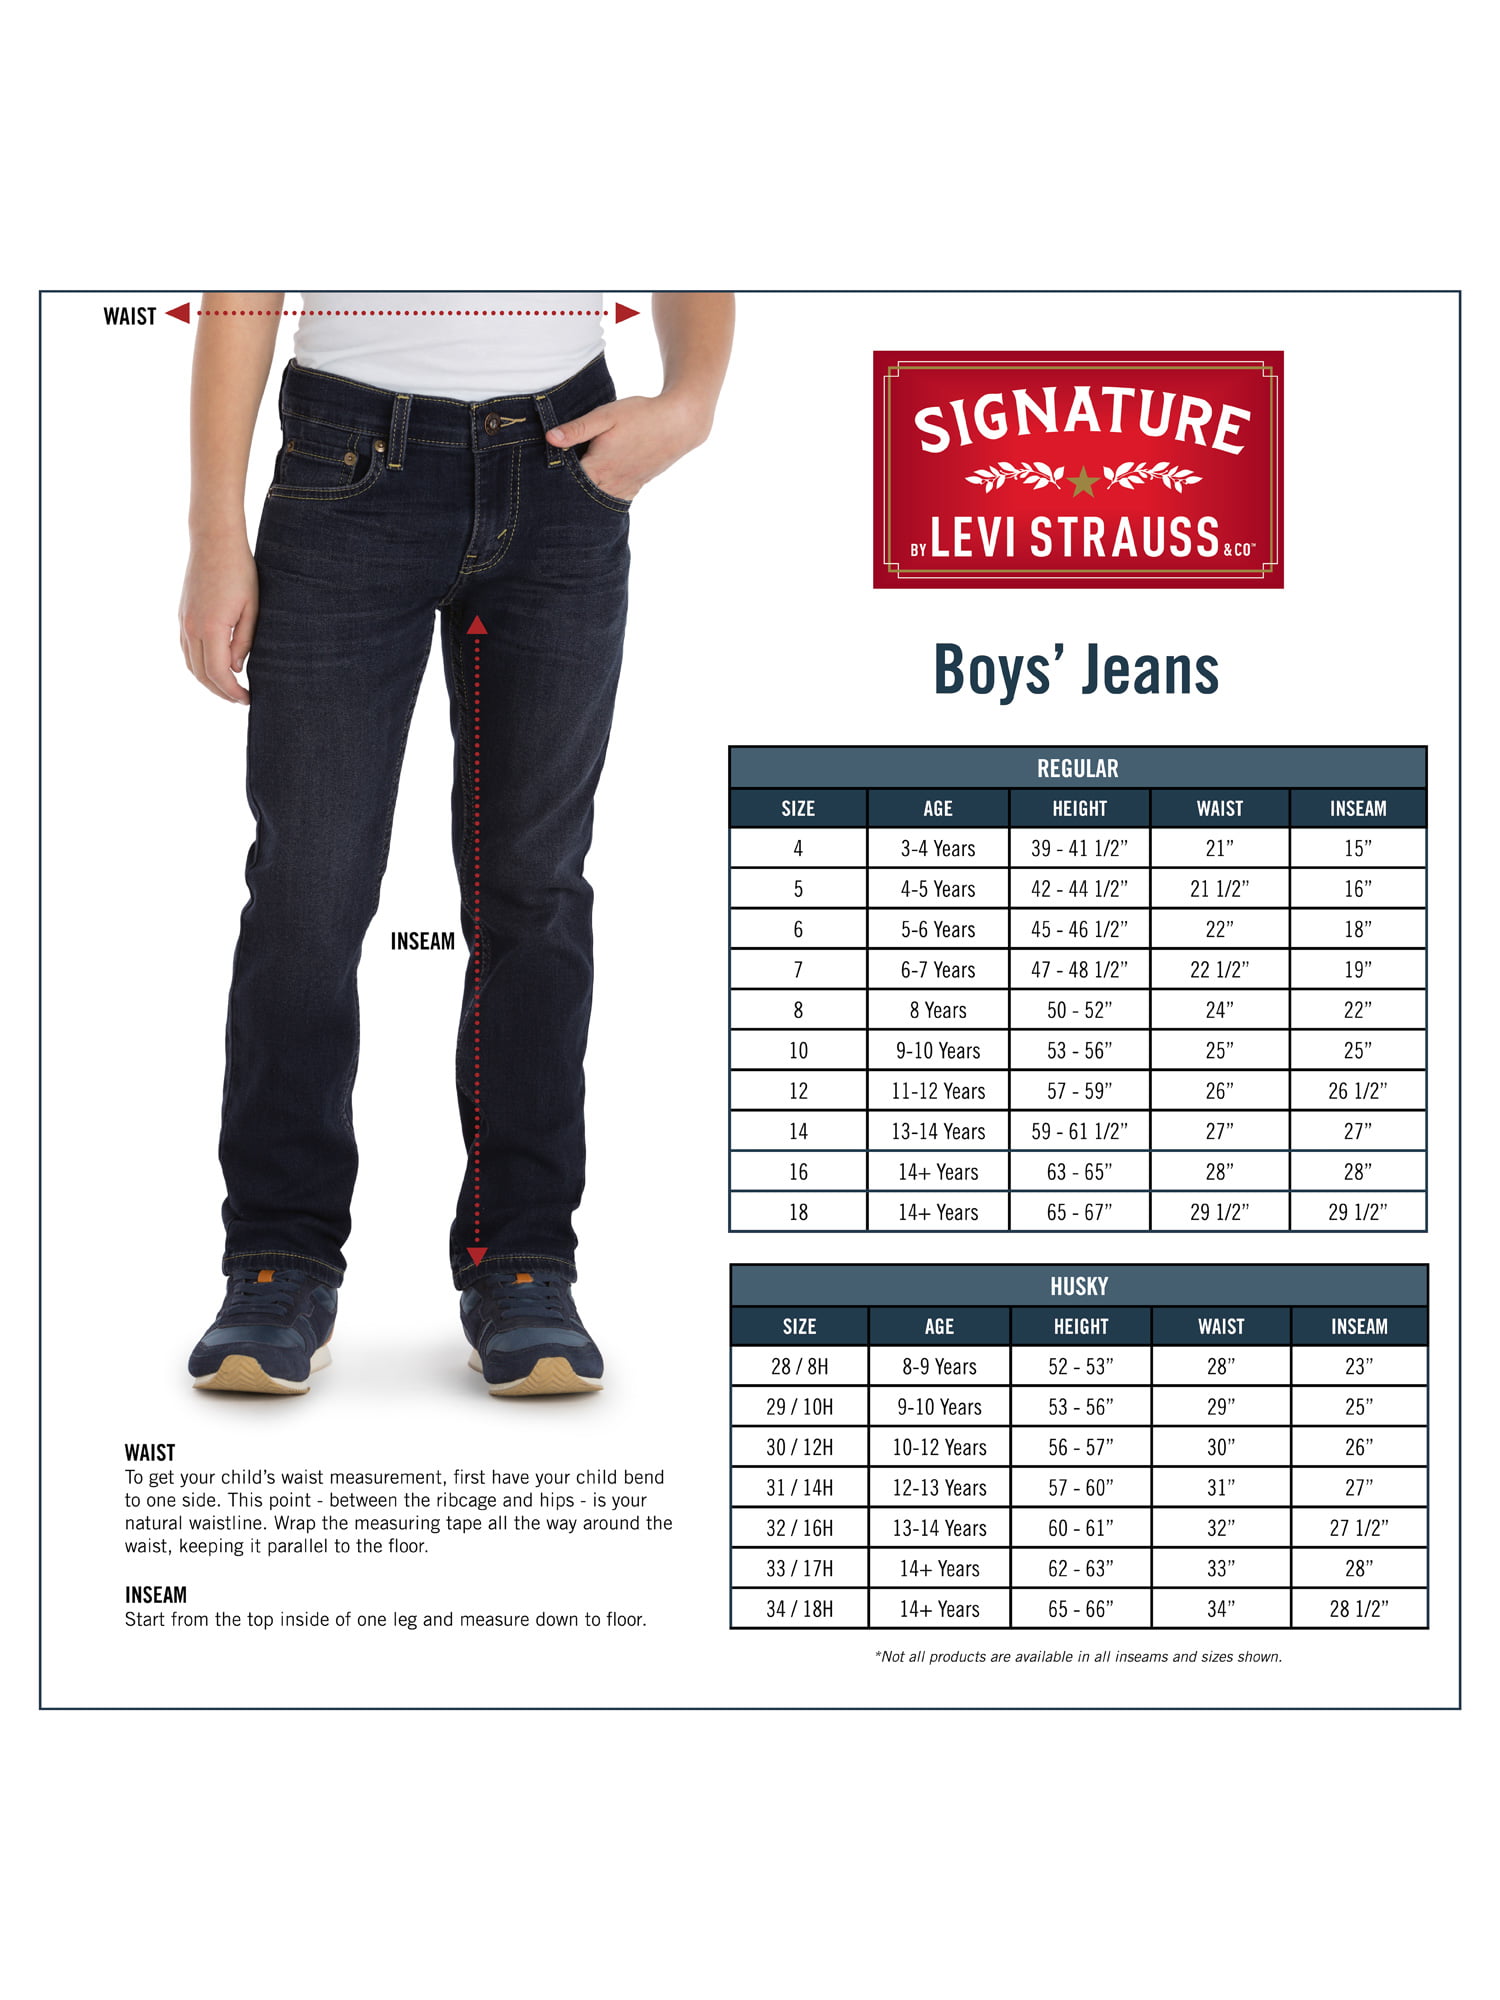 levi signature jeans size chart